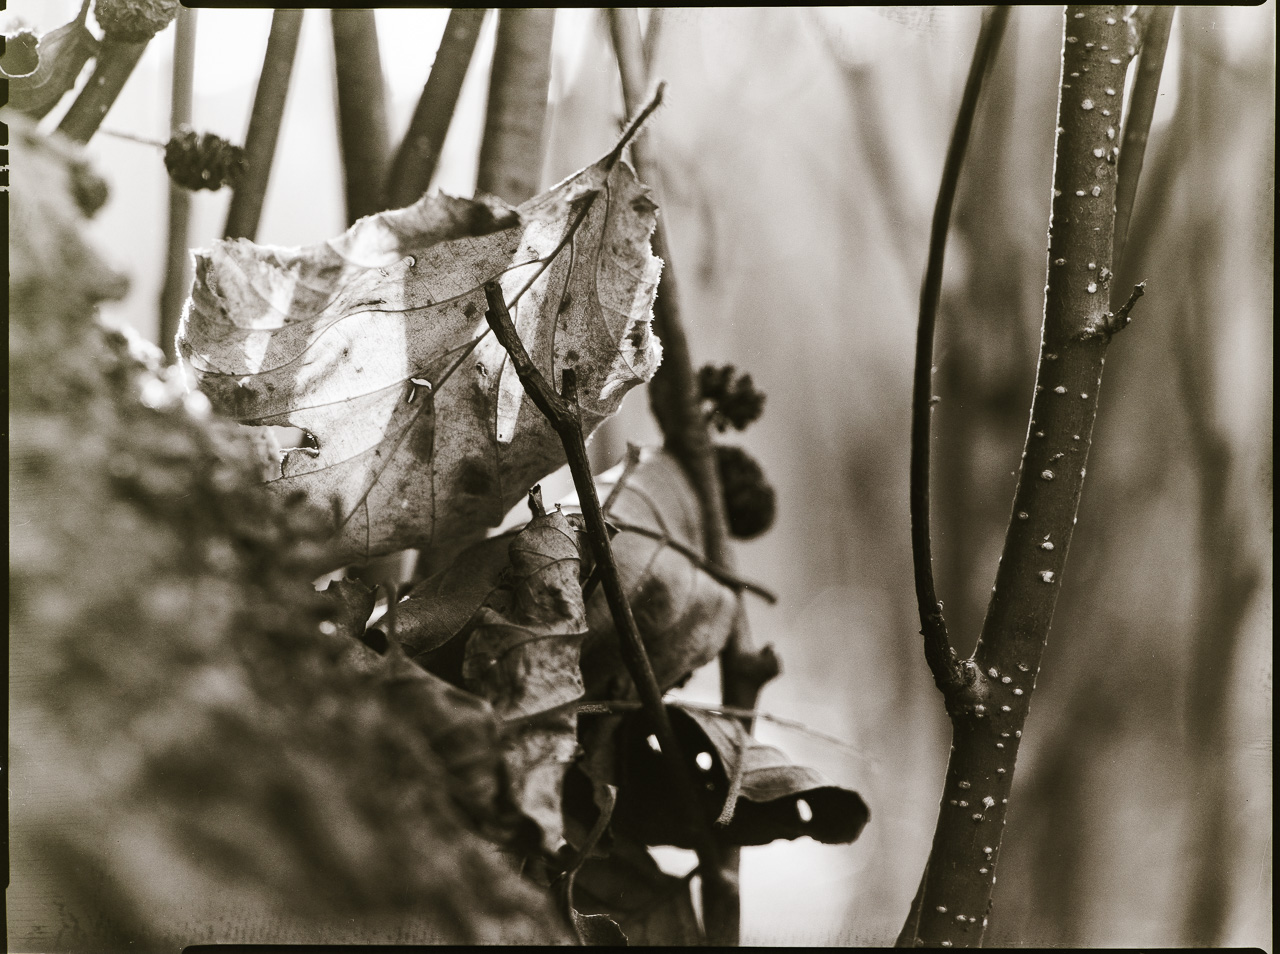 SchwarzWeißBild: Zwischen feinen Ästen werden mehrere trockene Blätter gehalten. Das größte und schärfste Blatt leuchtet im GegenLicht